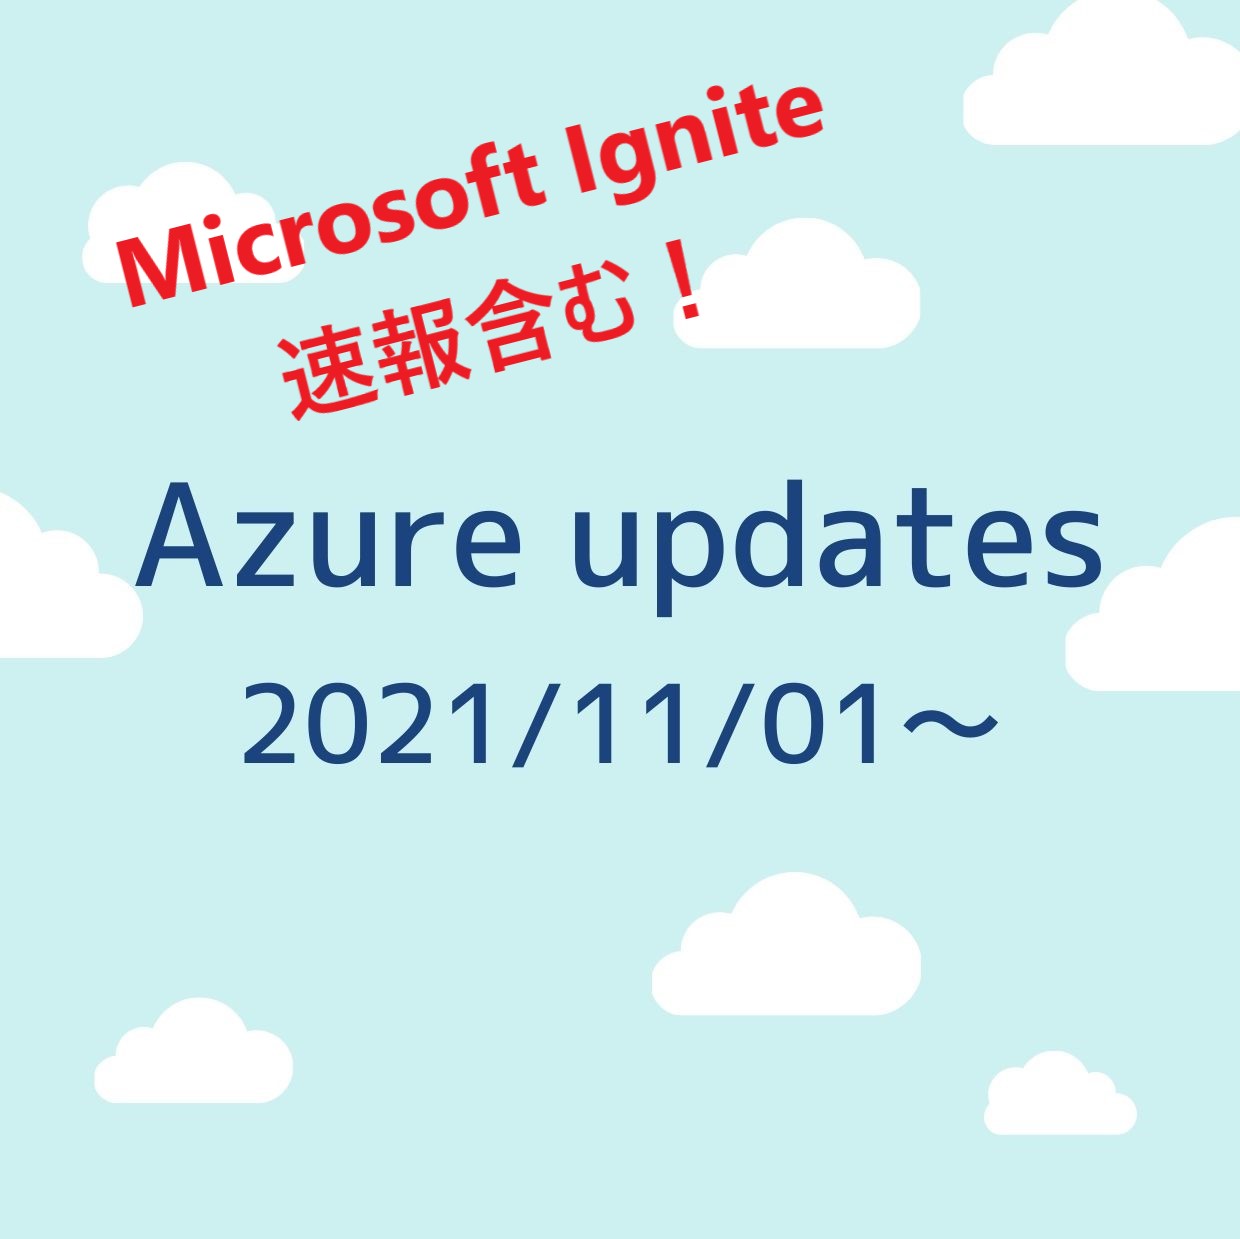 2021/11/01週の Azure updates まとめ【Microsoft Ignite 祭り！】